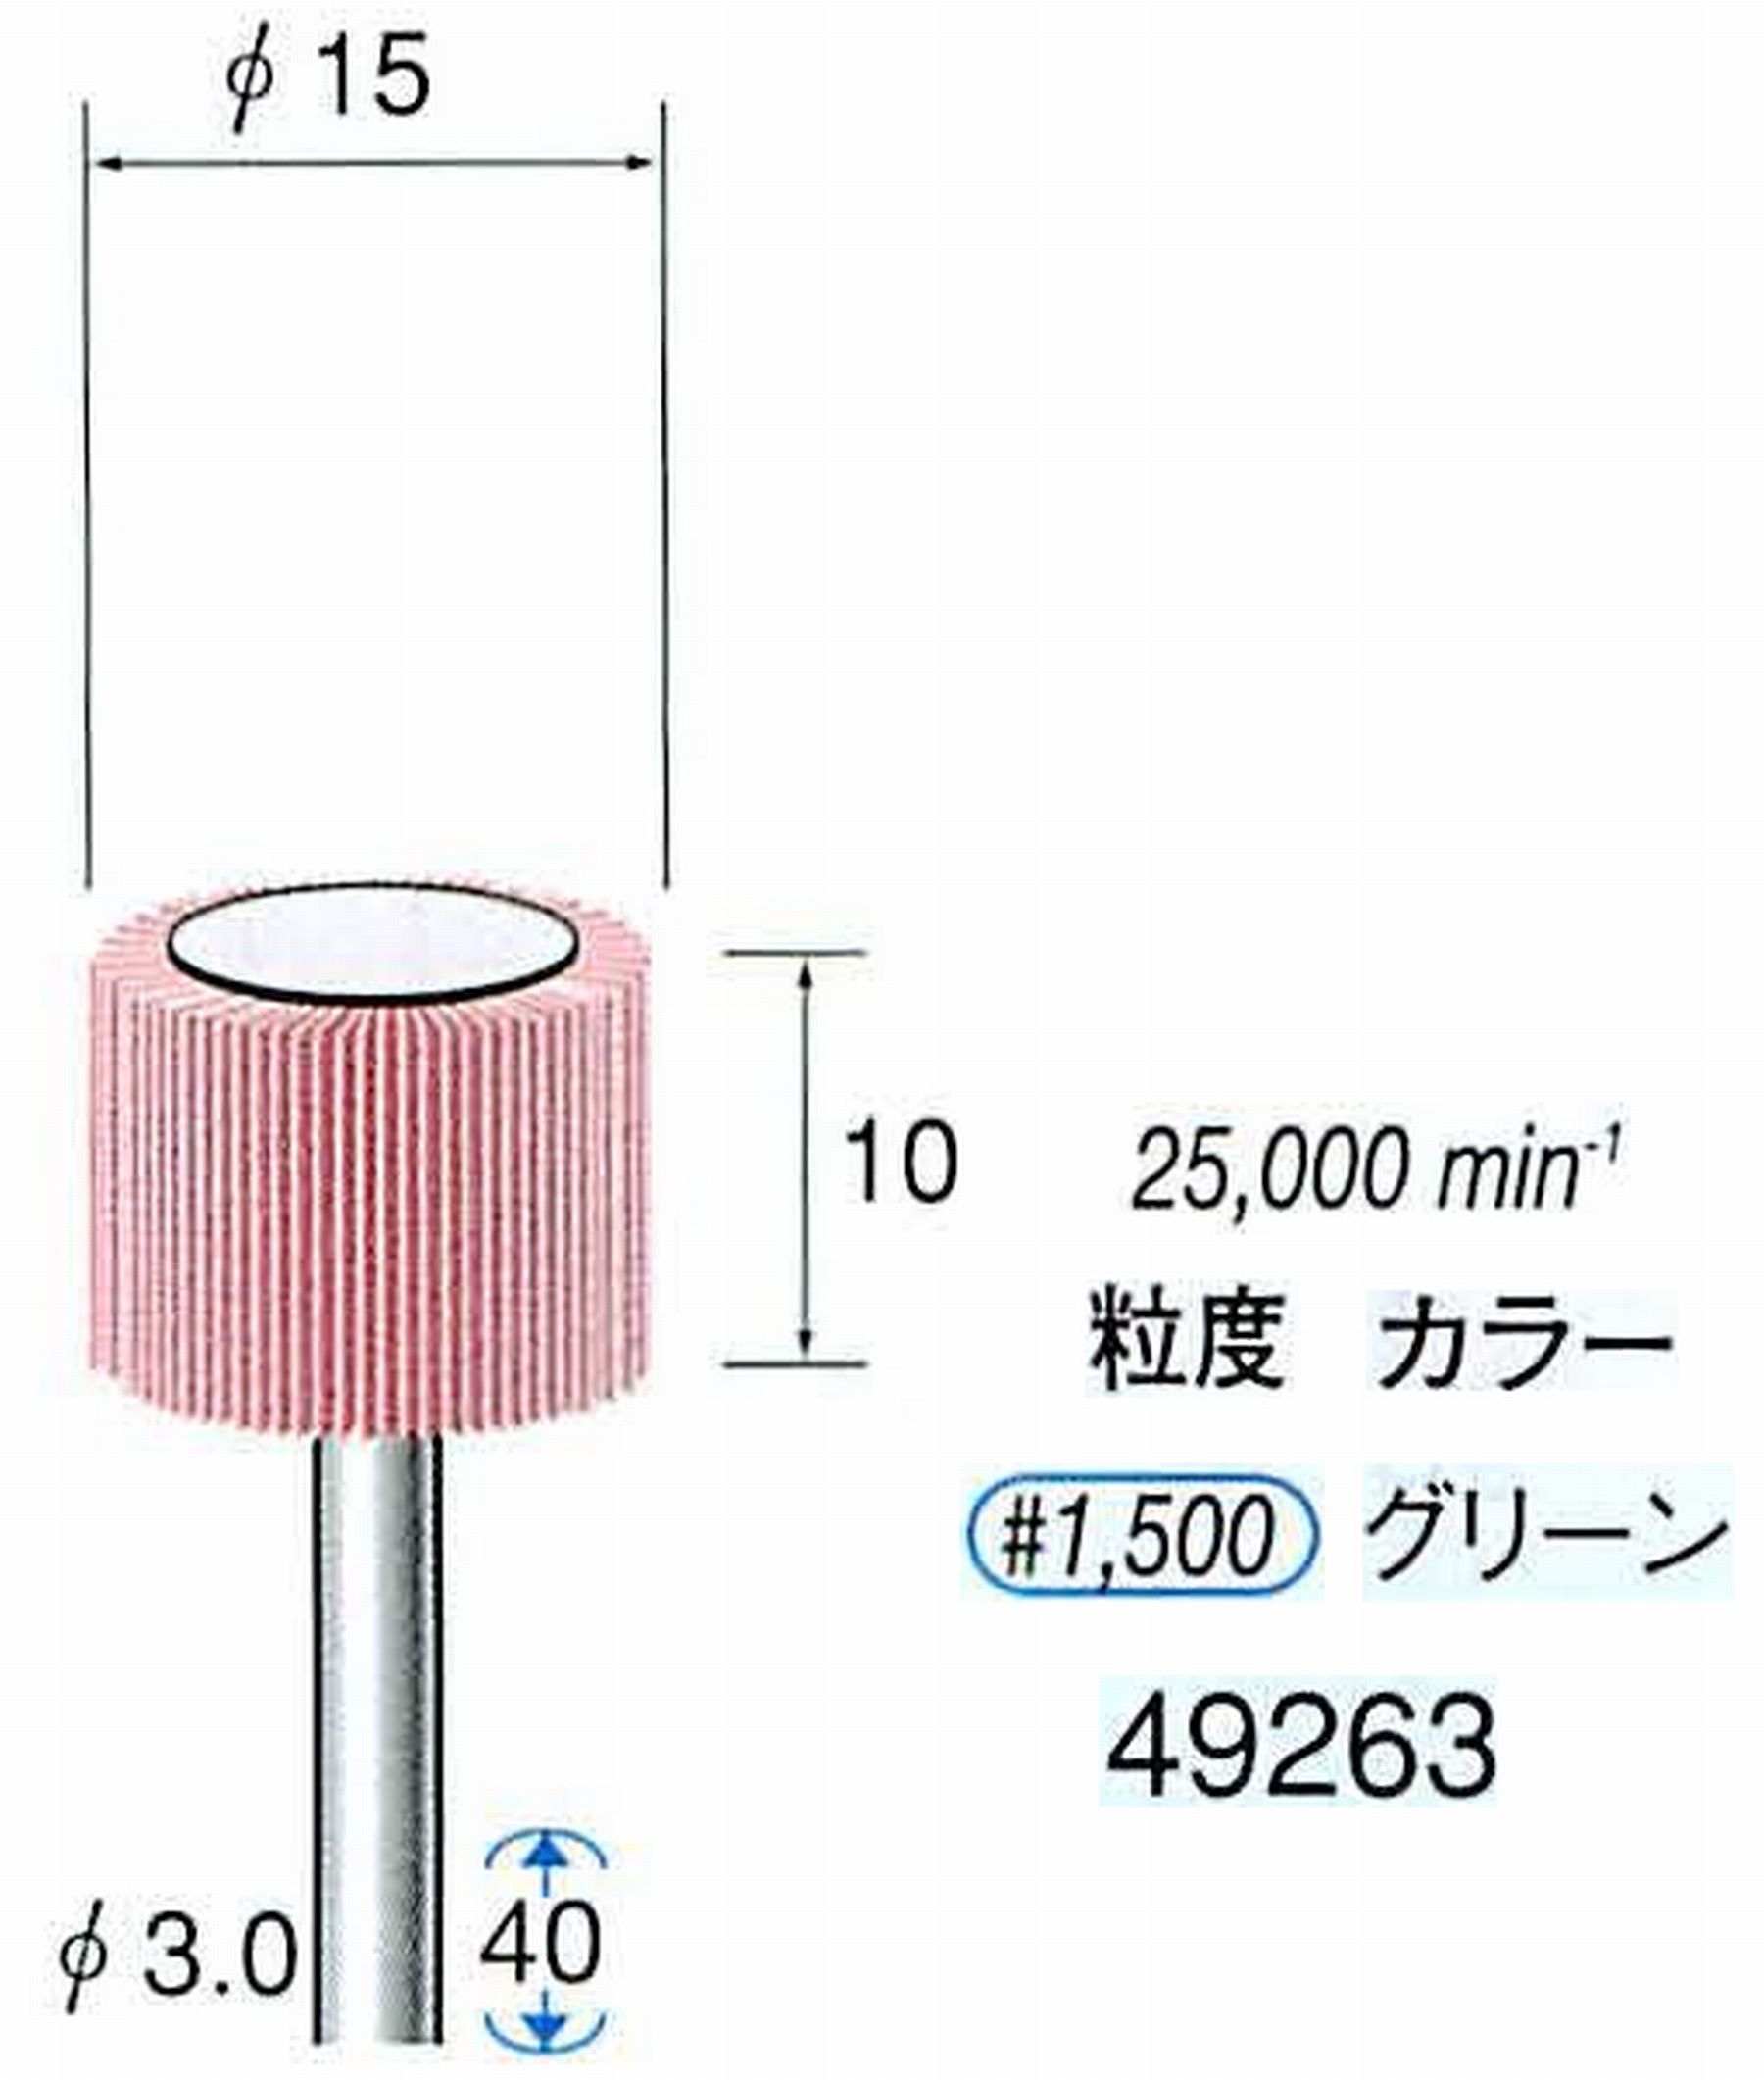 ナカニシ/NAKANISHI ファイン フラップサンダー 軸径(シャンク)φ3.0mm 49263